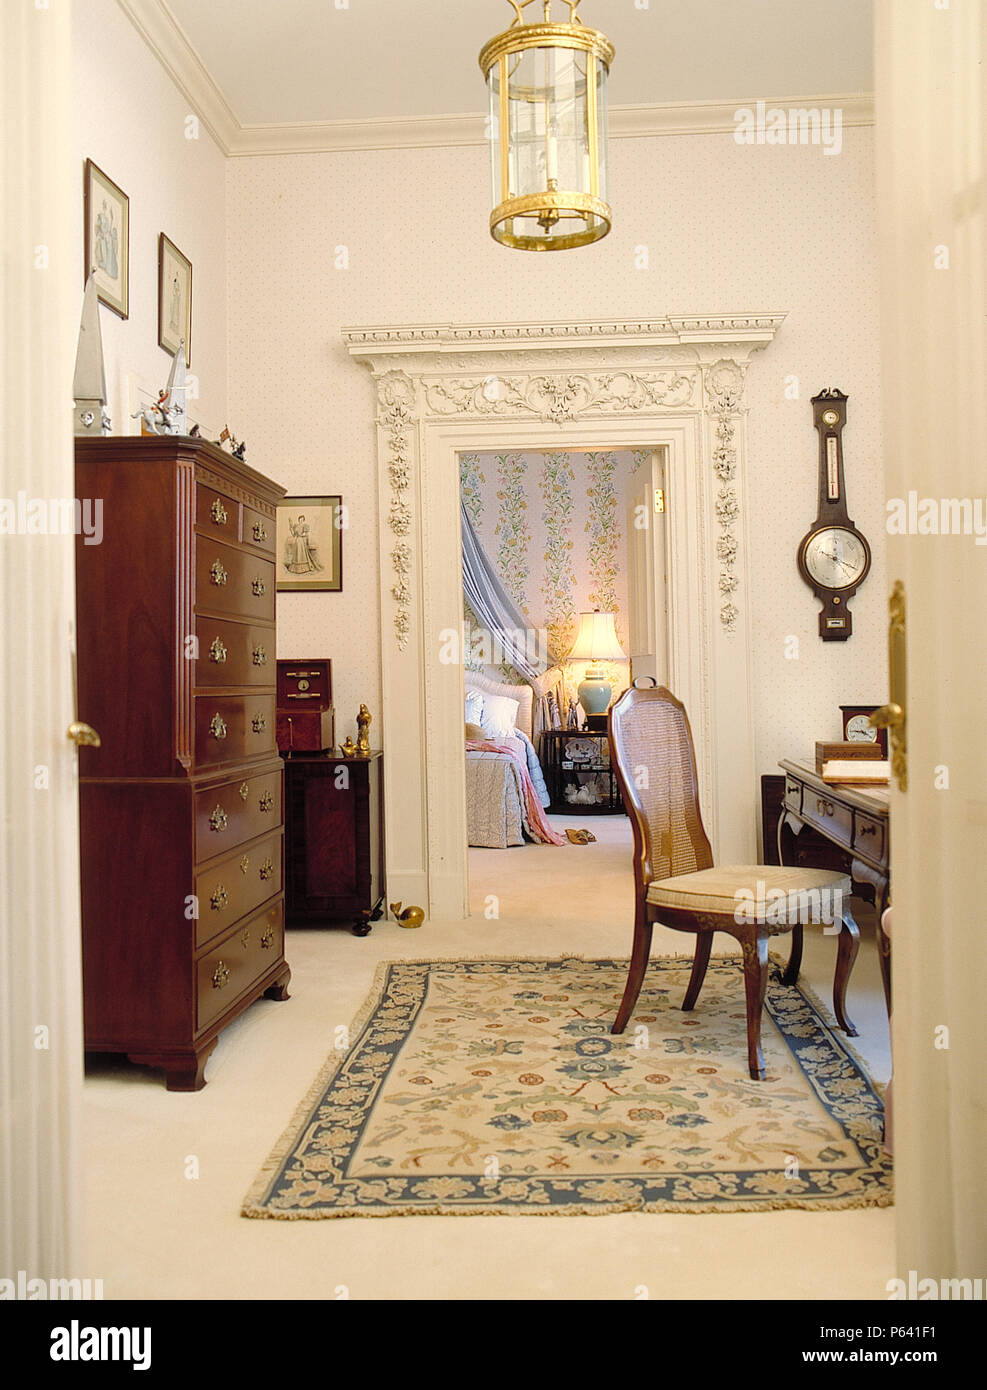 Antique de pecho en el pecho en estudio vestidor con vista a través de la puerta de la habitación Foto de stock